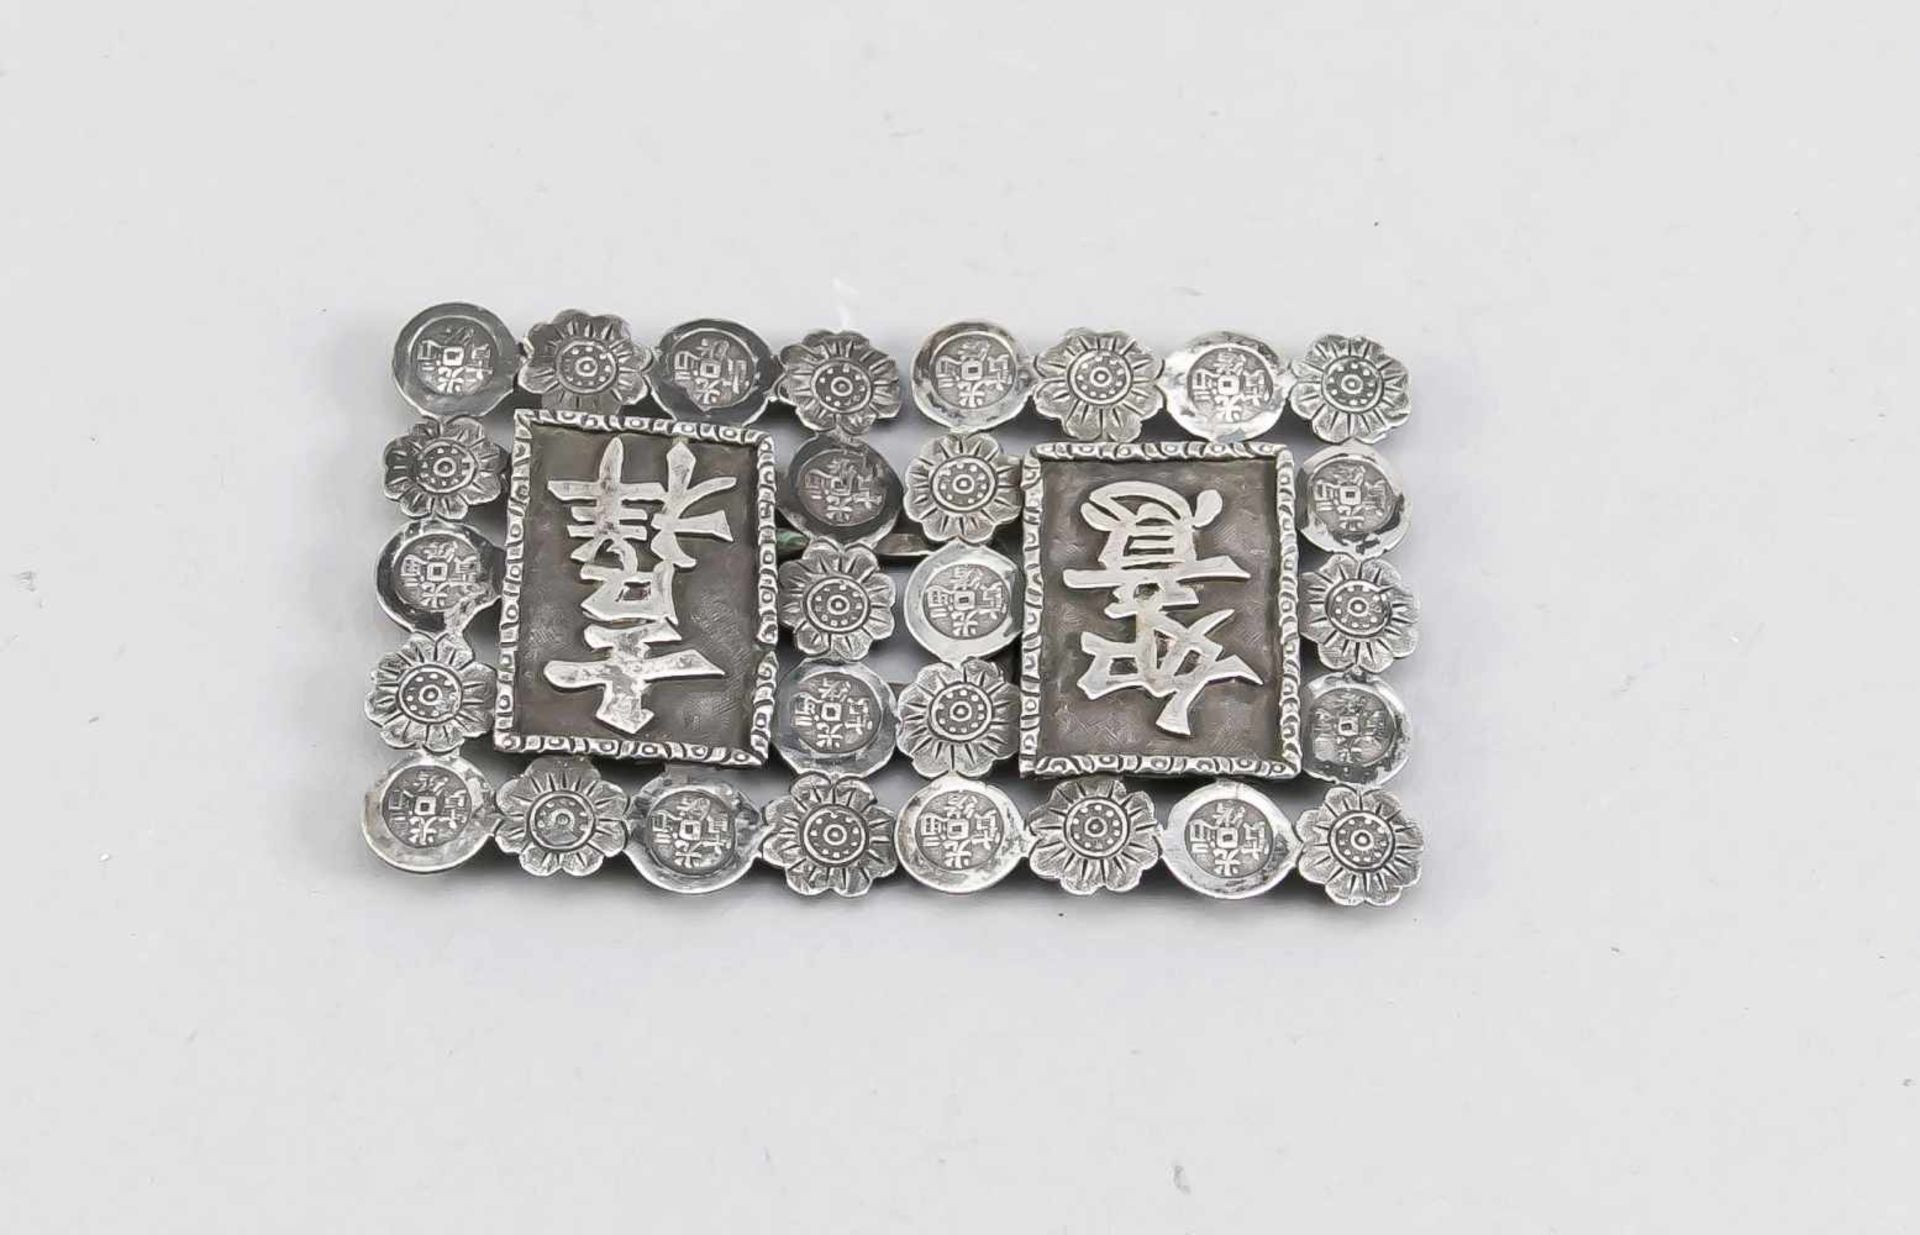 Gürtelschnalle, China, Mitte 20. Jh, Silber. Rechteckiges Paneel mit Schriftzeichen vor fein